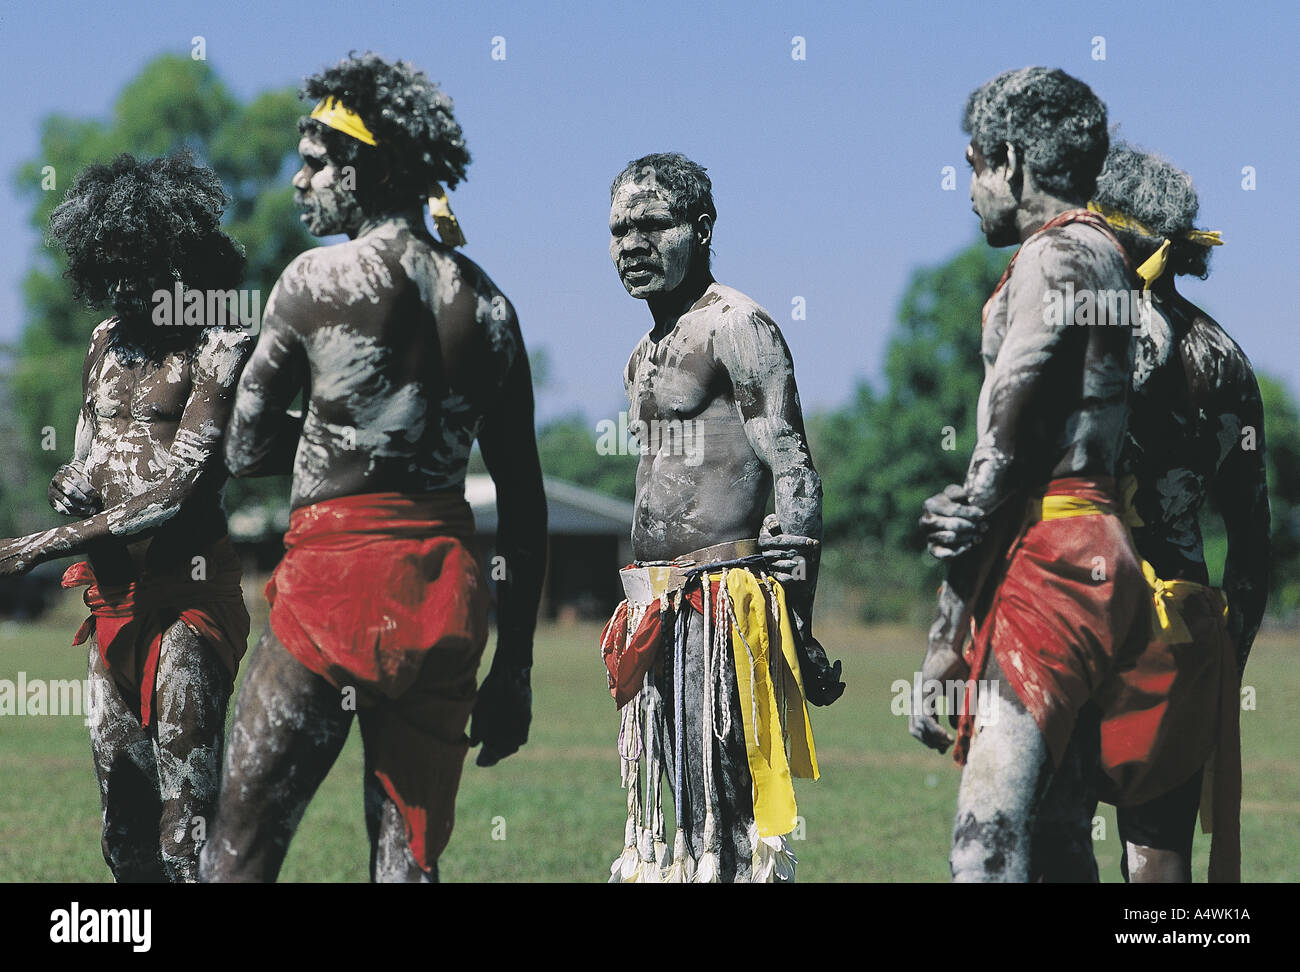 Danse rituelle des autochtones en Australie Arnhemland Banque D'Images